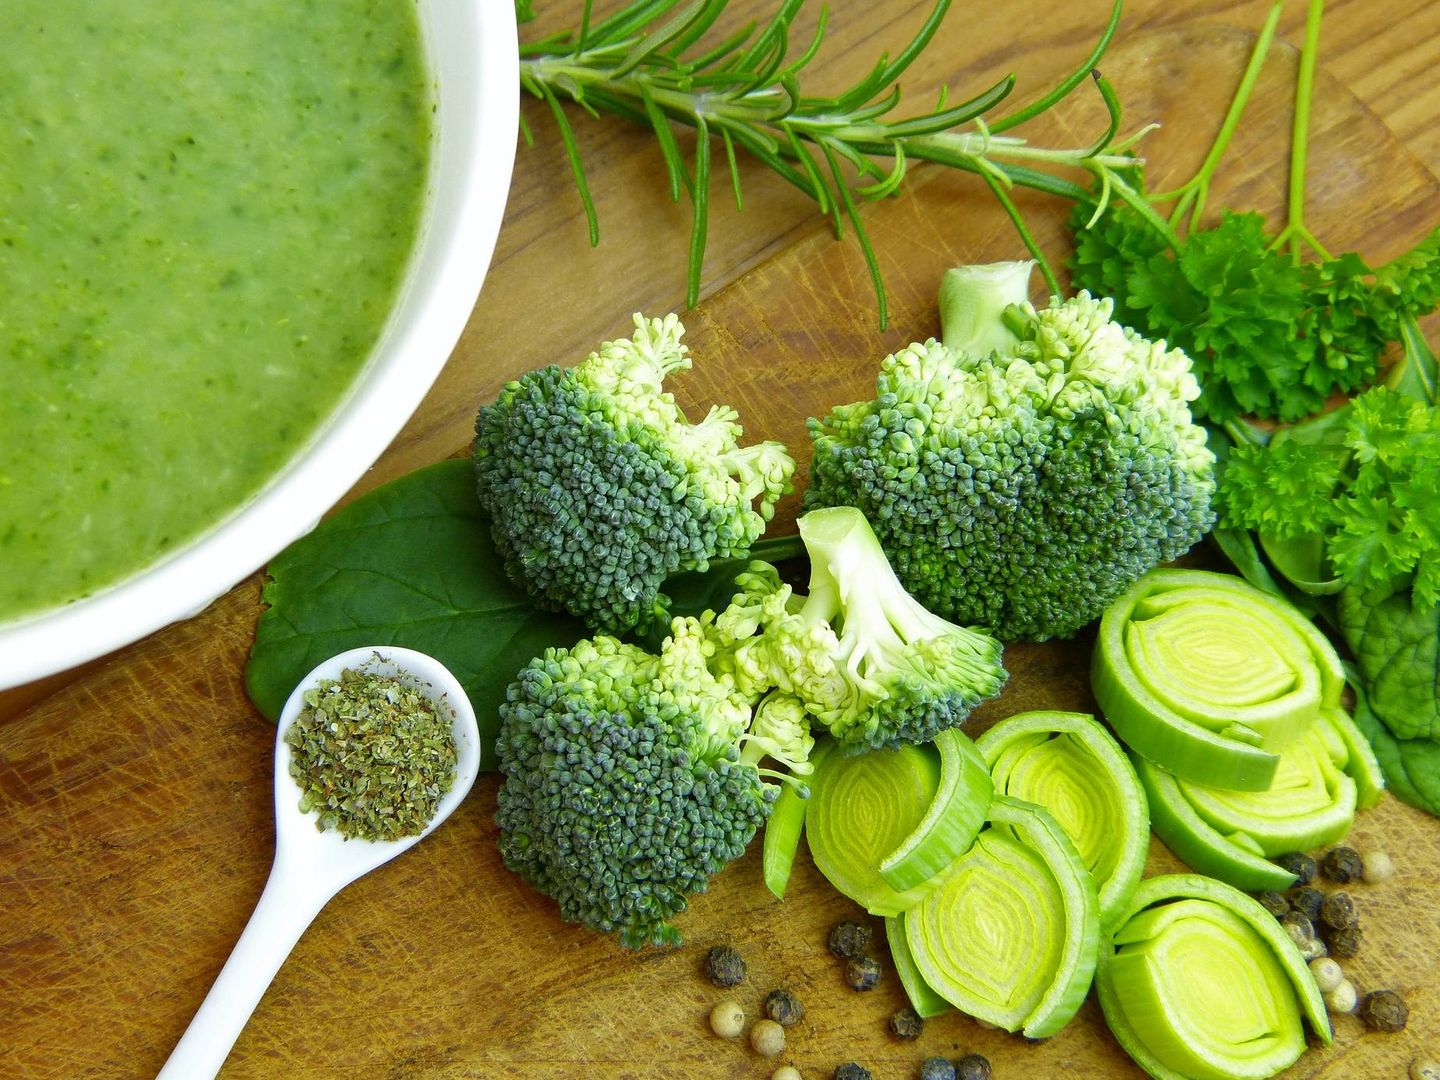 Hay muchas maneras de añadir el brócoli en nuestra dieta